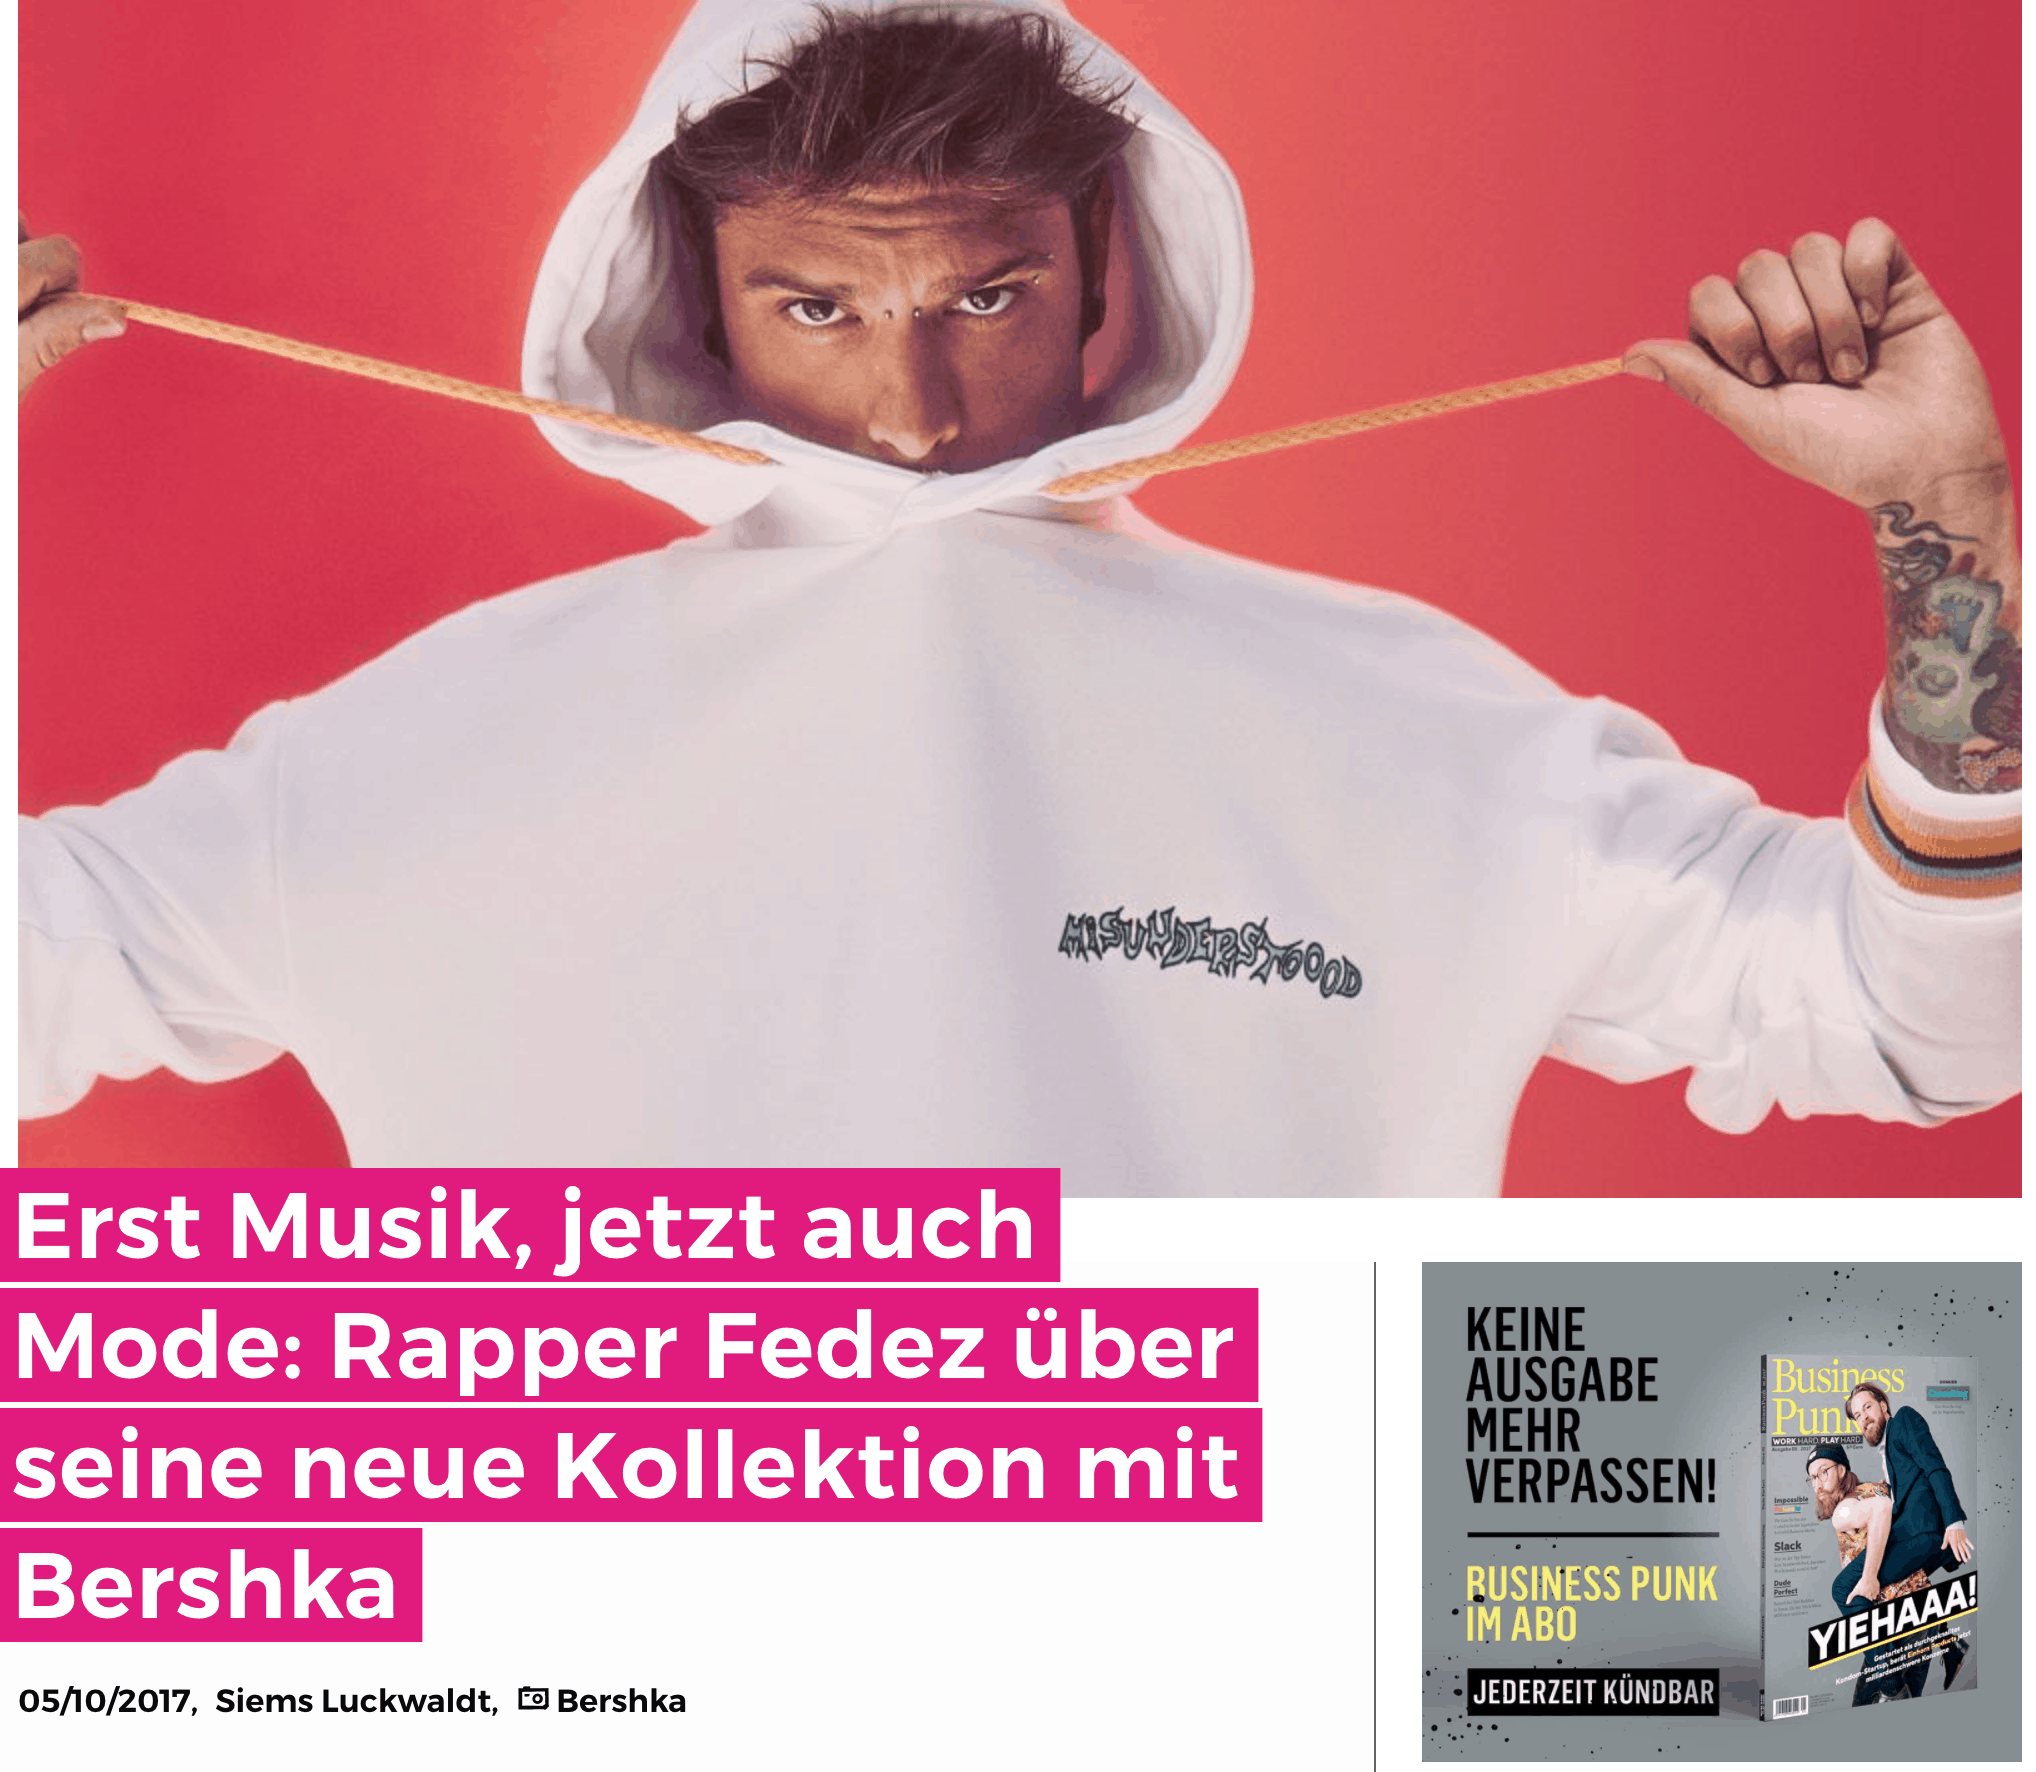 Erst Musik, jetzt Mode: Fedez x Bershka (für Business-Punk.com)